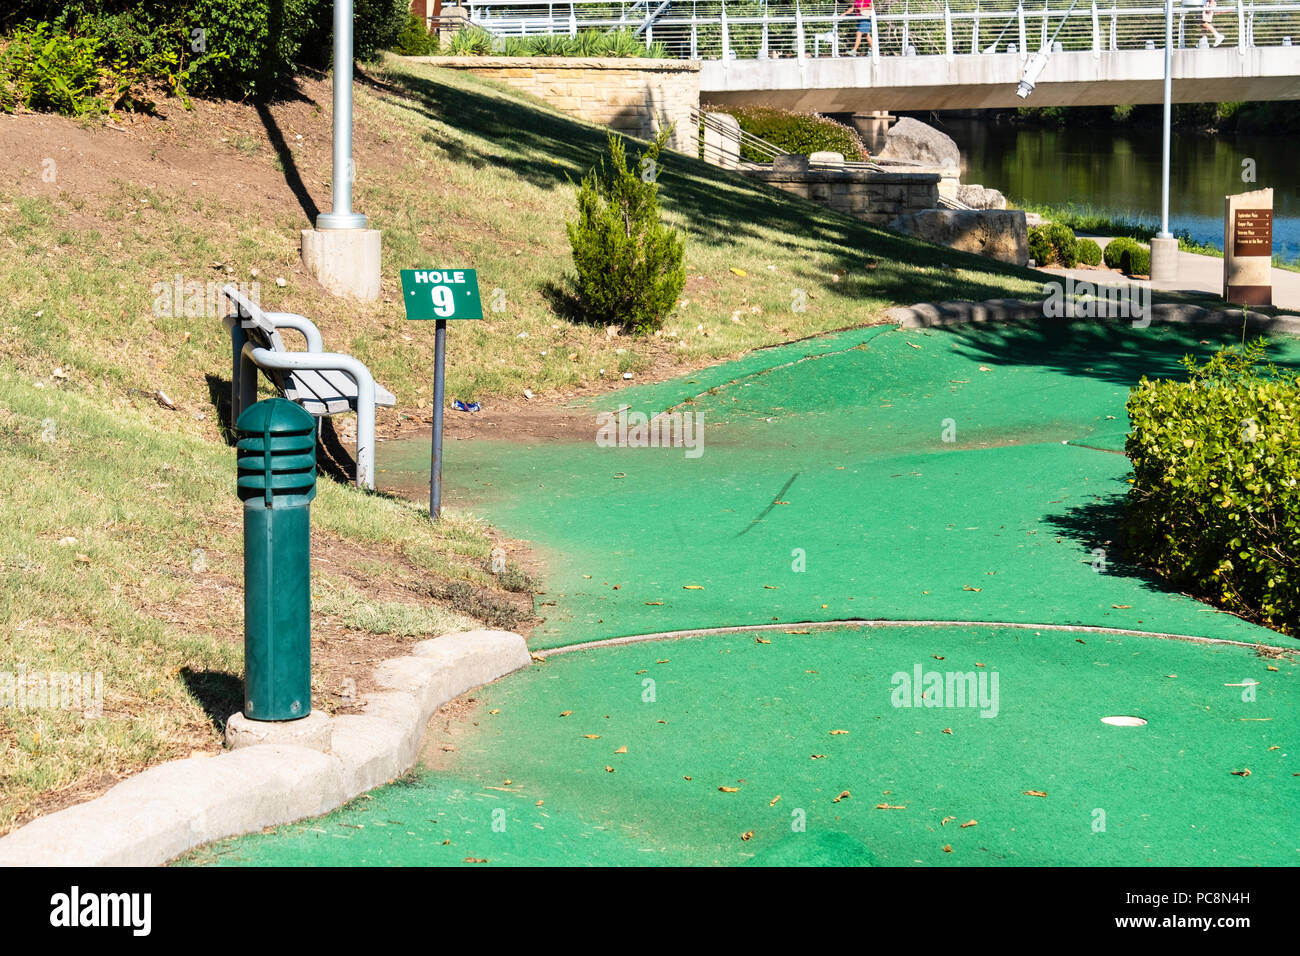 An unkept minature golf course next to the Arkansas river in Wichita, Kansas, USA. Stock Photo